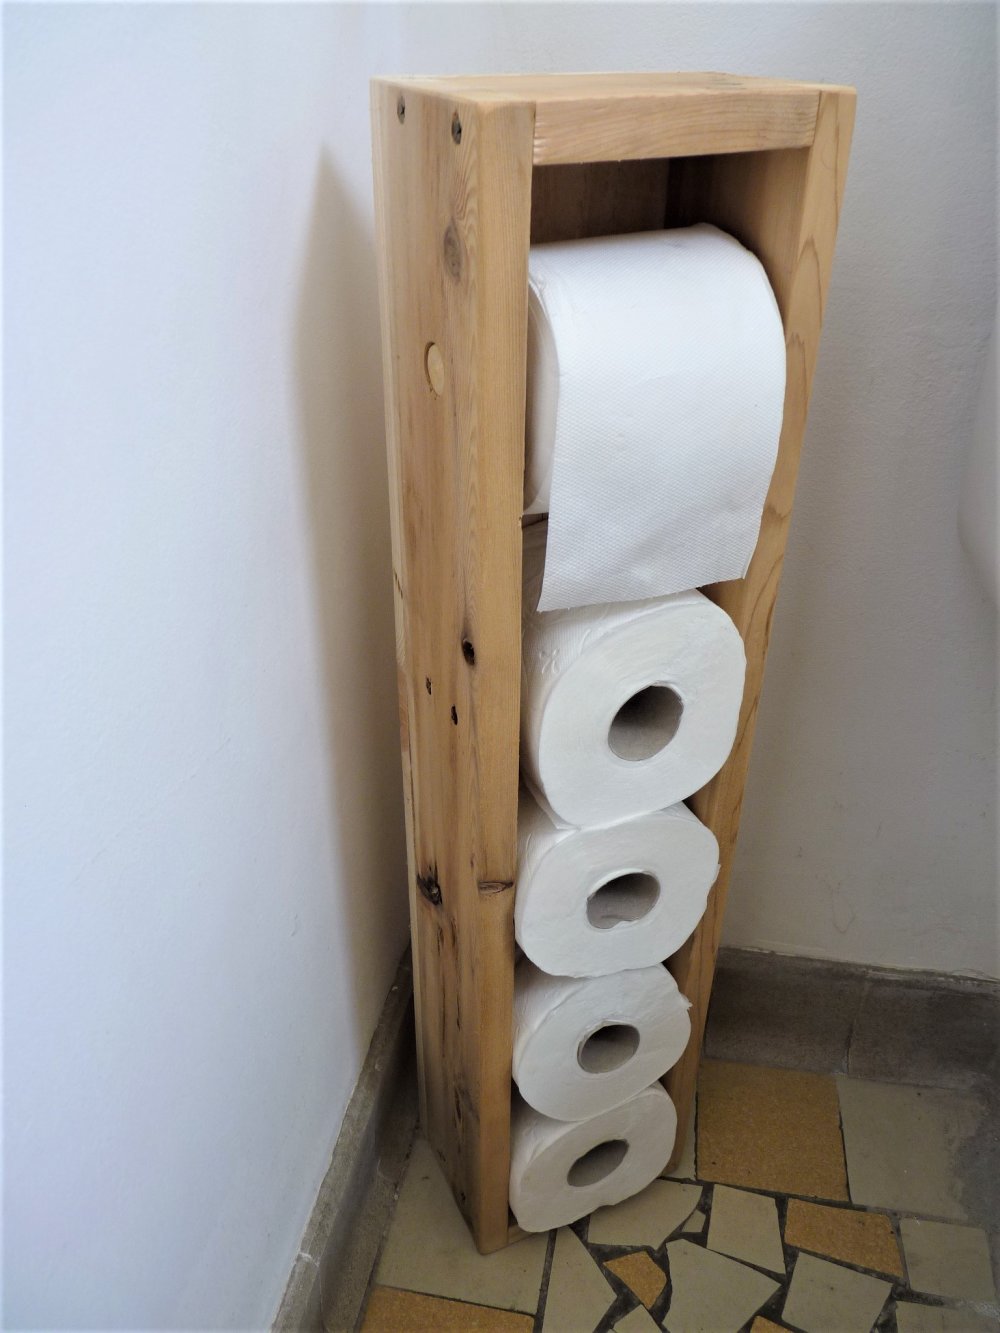 Dérouleur papier toilettes bois palettes - Un grand marché